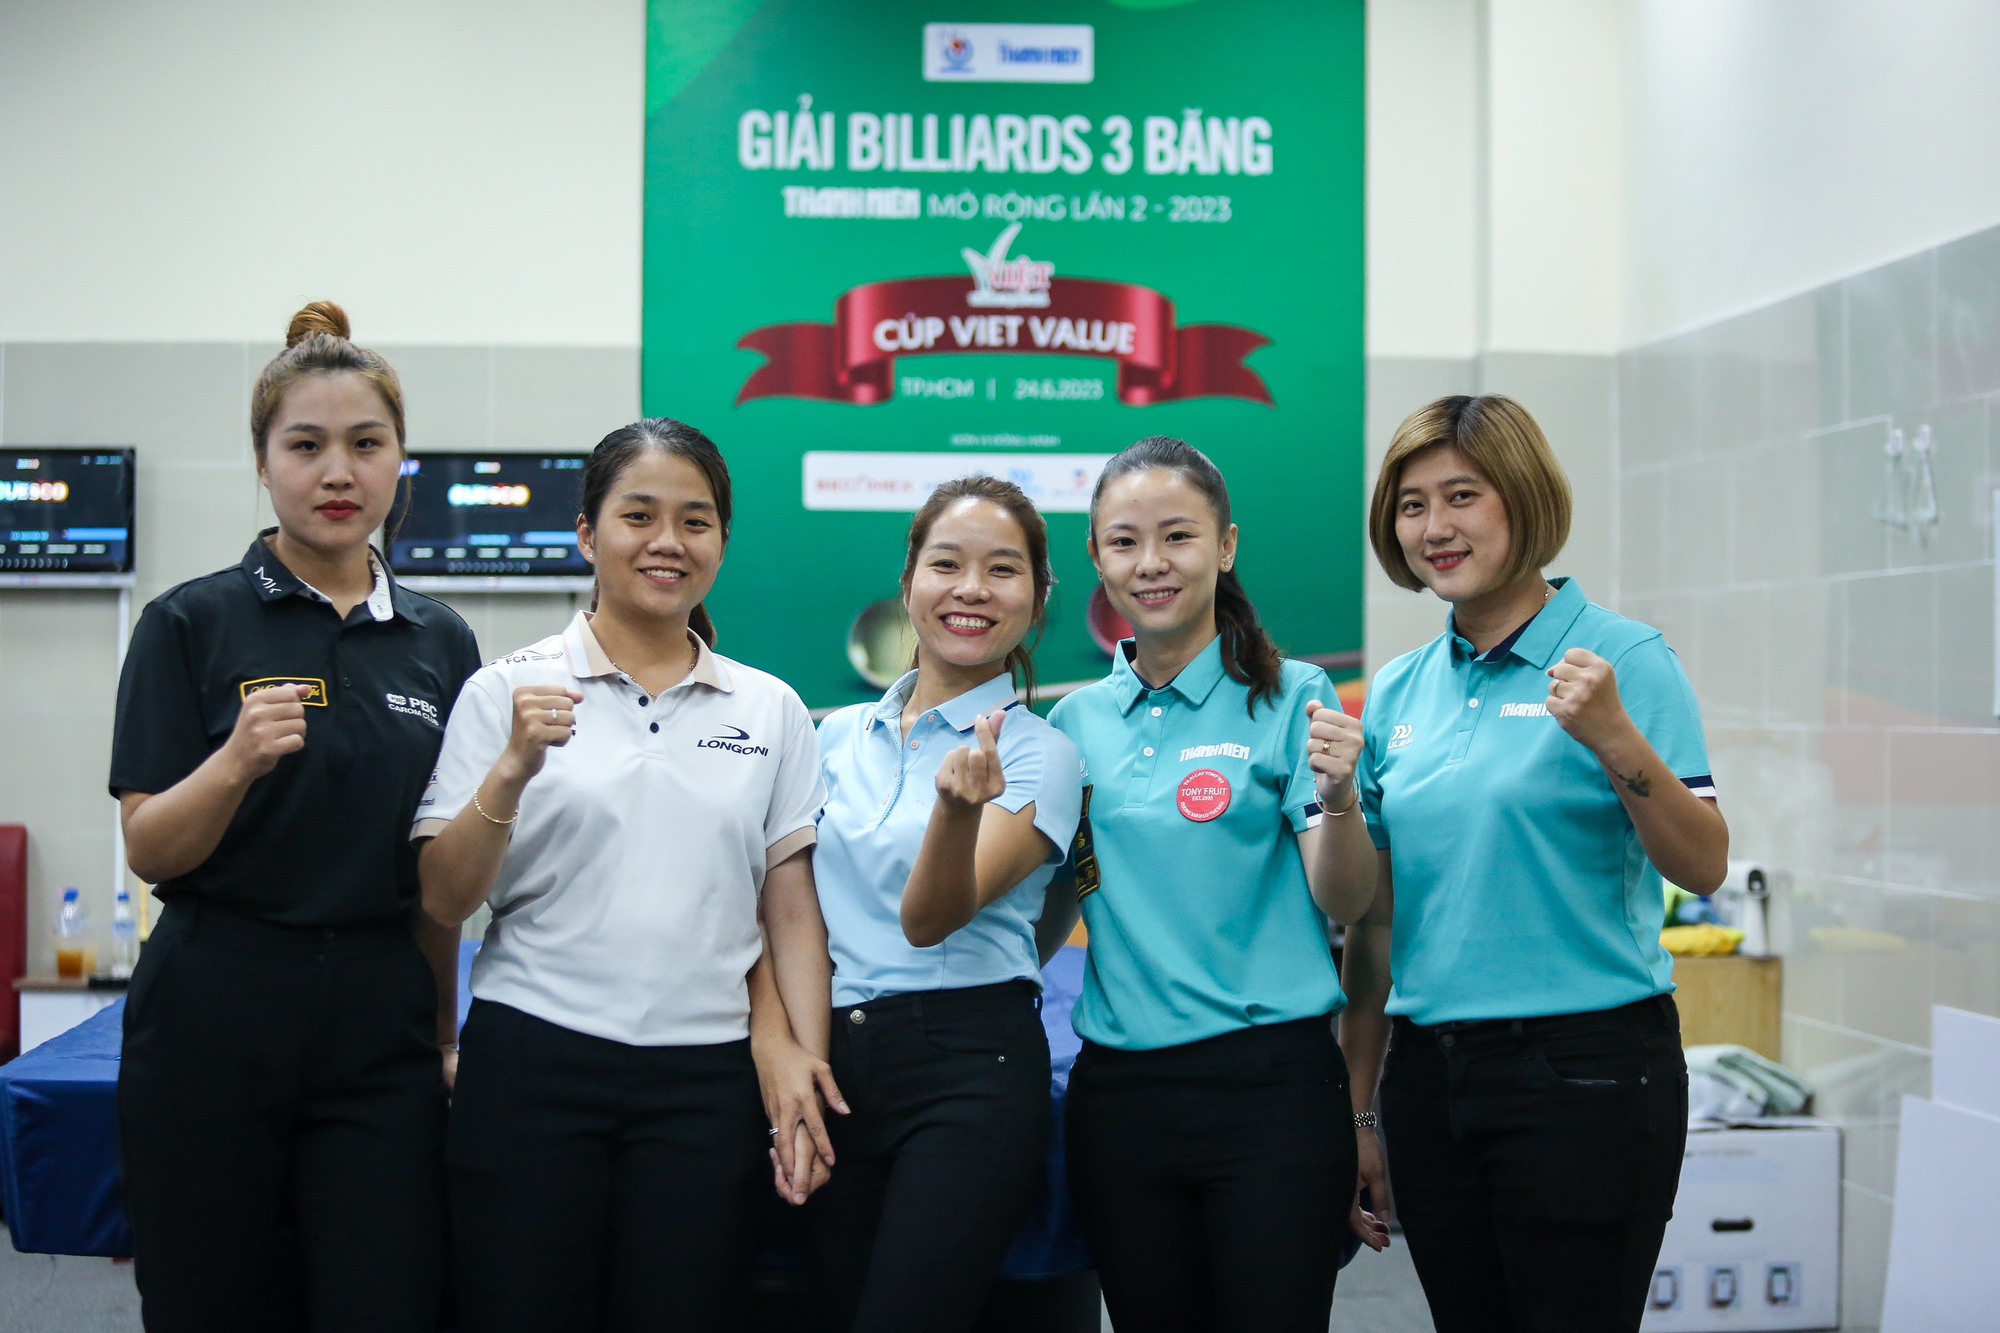 Bất ngờ lớn ở giải billiards 3 băng Thanh Niên mở rộng 2023 - Ảnh 1.